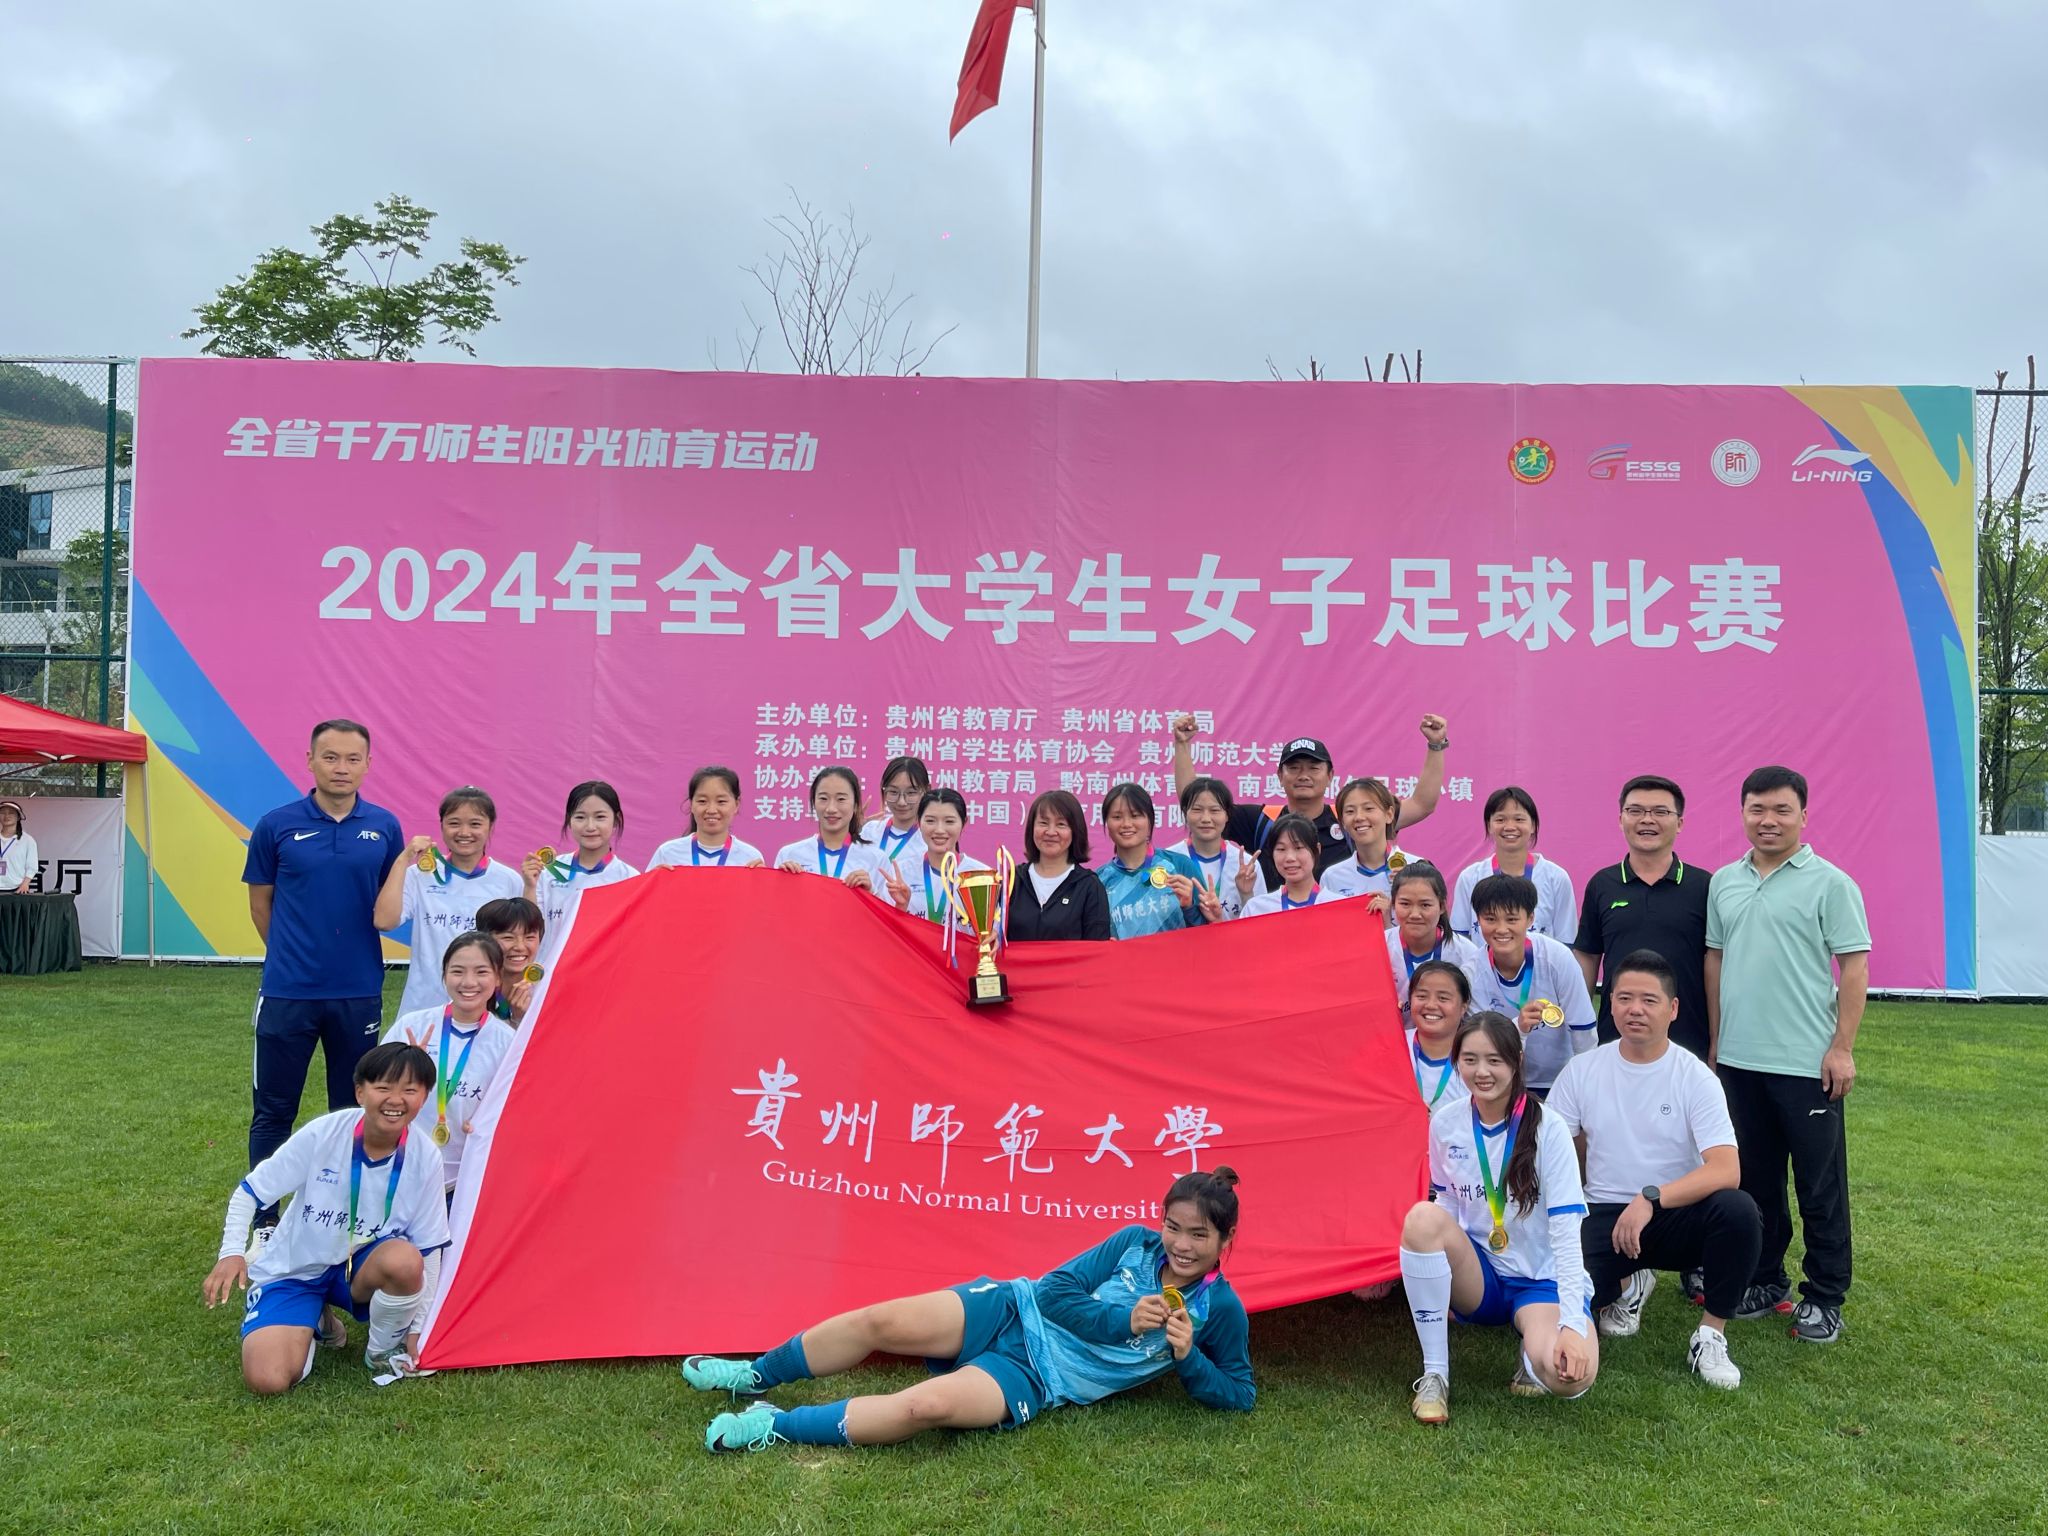 我校女子足球队获得2024年全省大学生女子足球比赛冠军